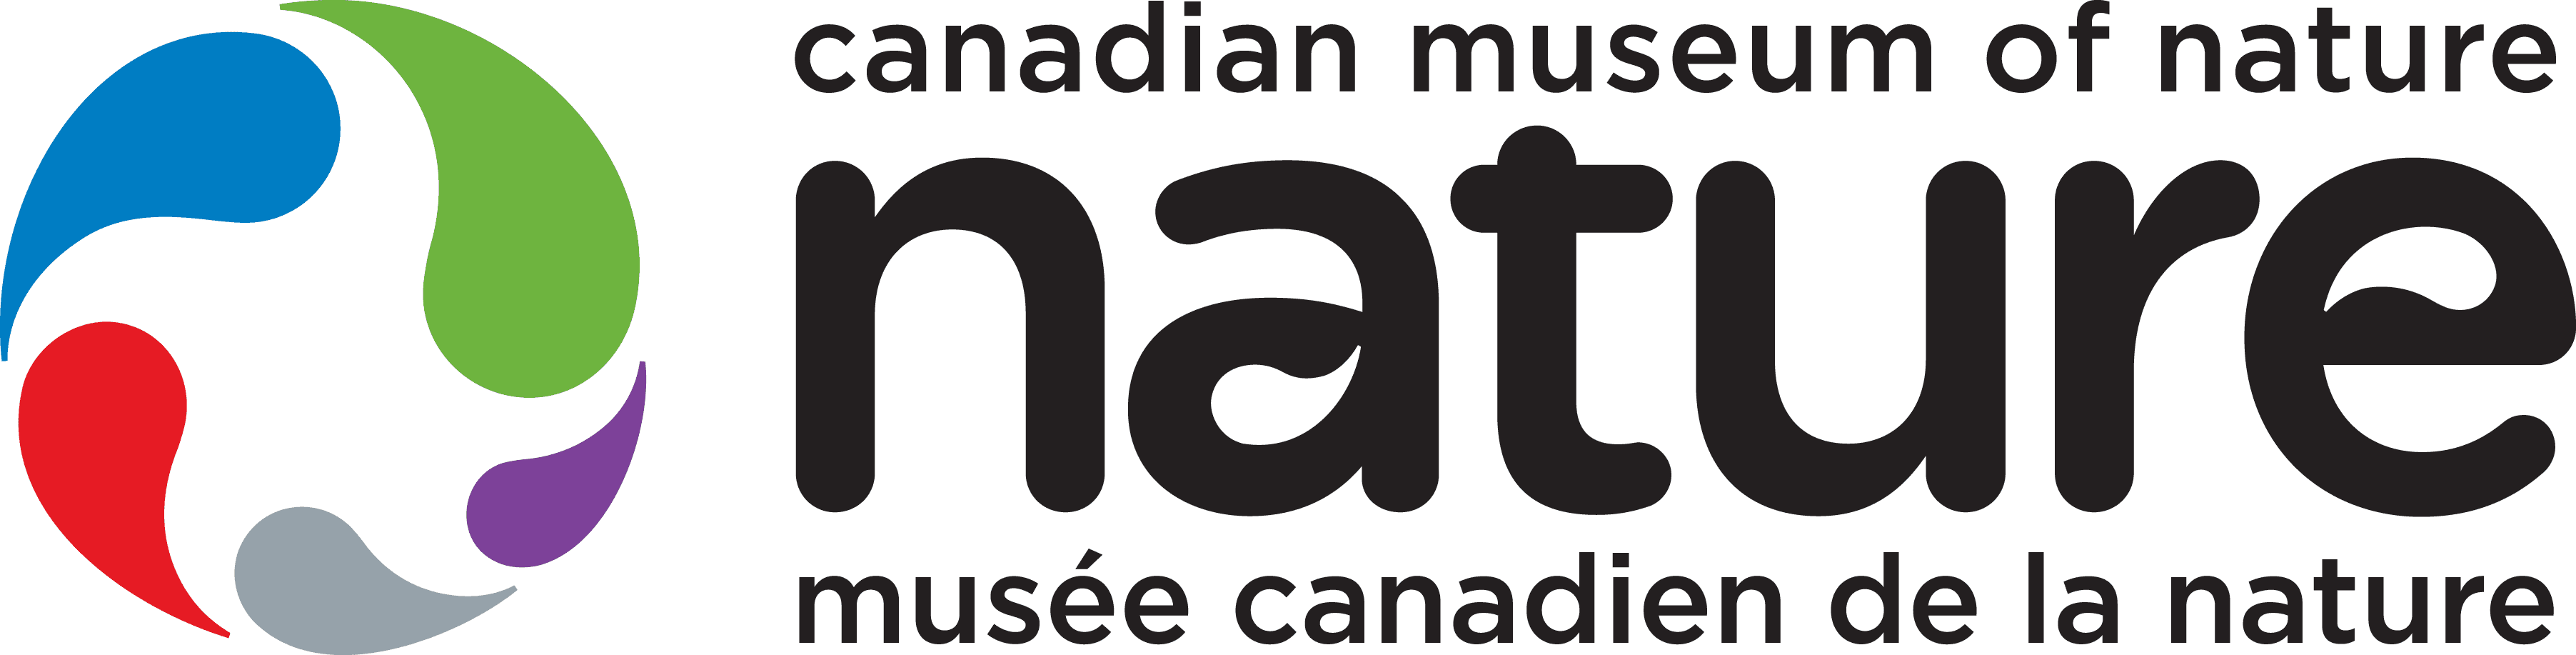 Canadian Museum of Nature | Musée Canadien de la Nature